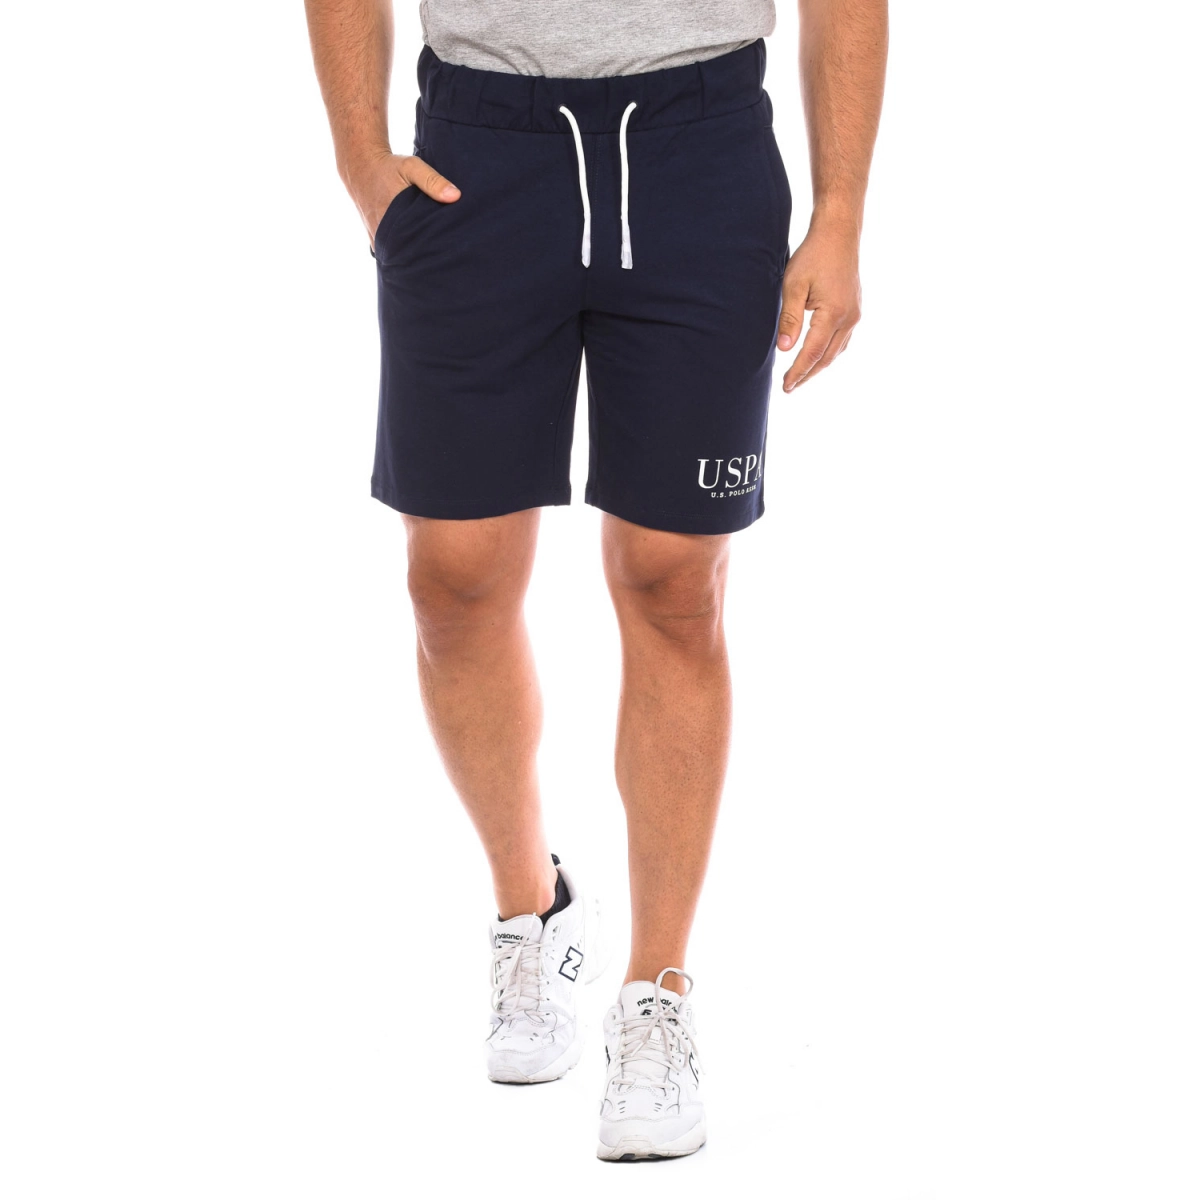 Pantalón corto deportivo U.S. POLO ASSN. 67935 hombre Talla: XXL Color: Azul